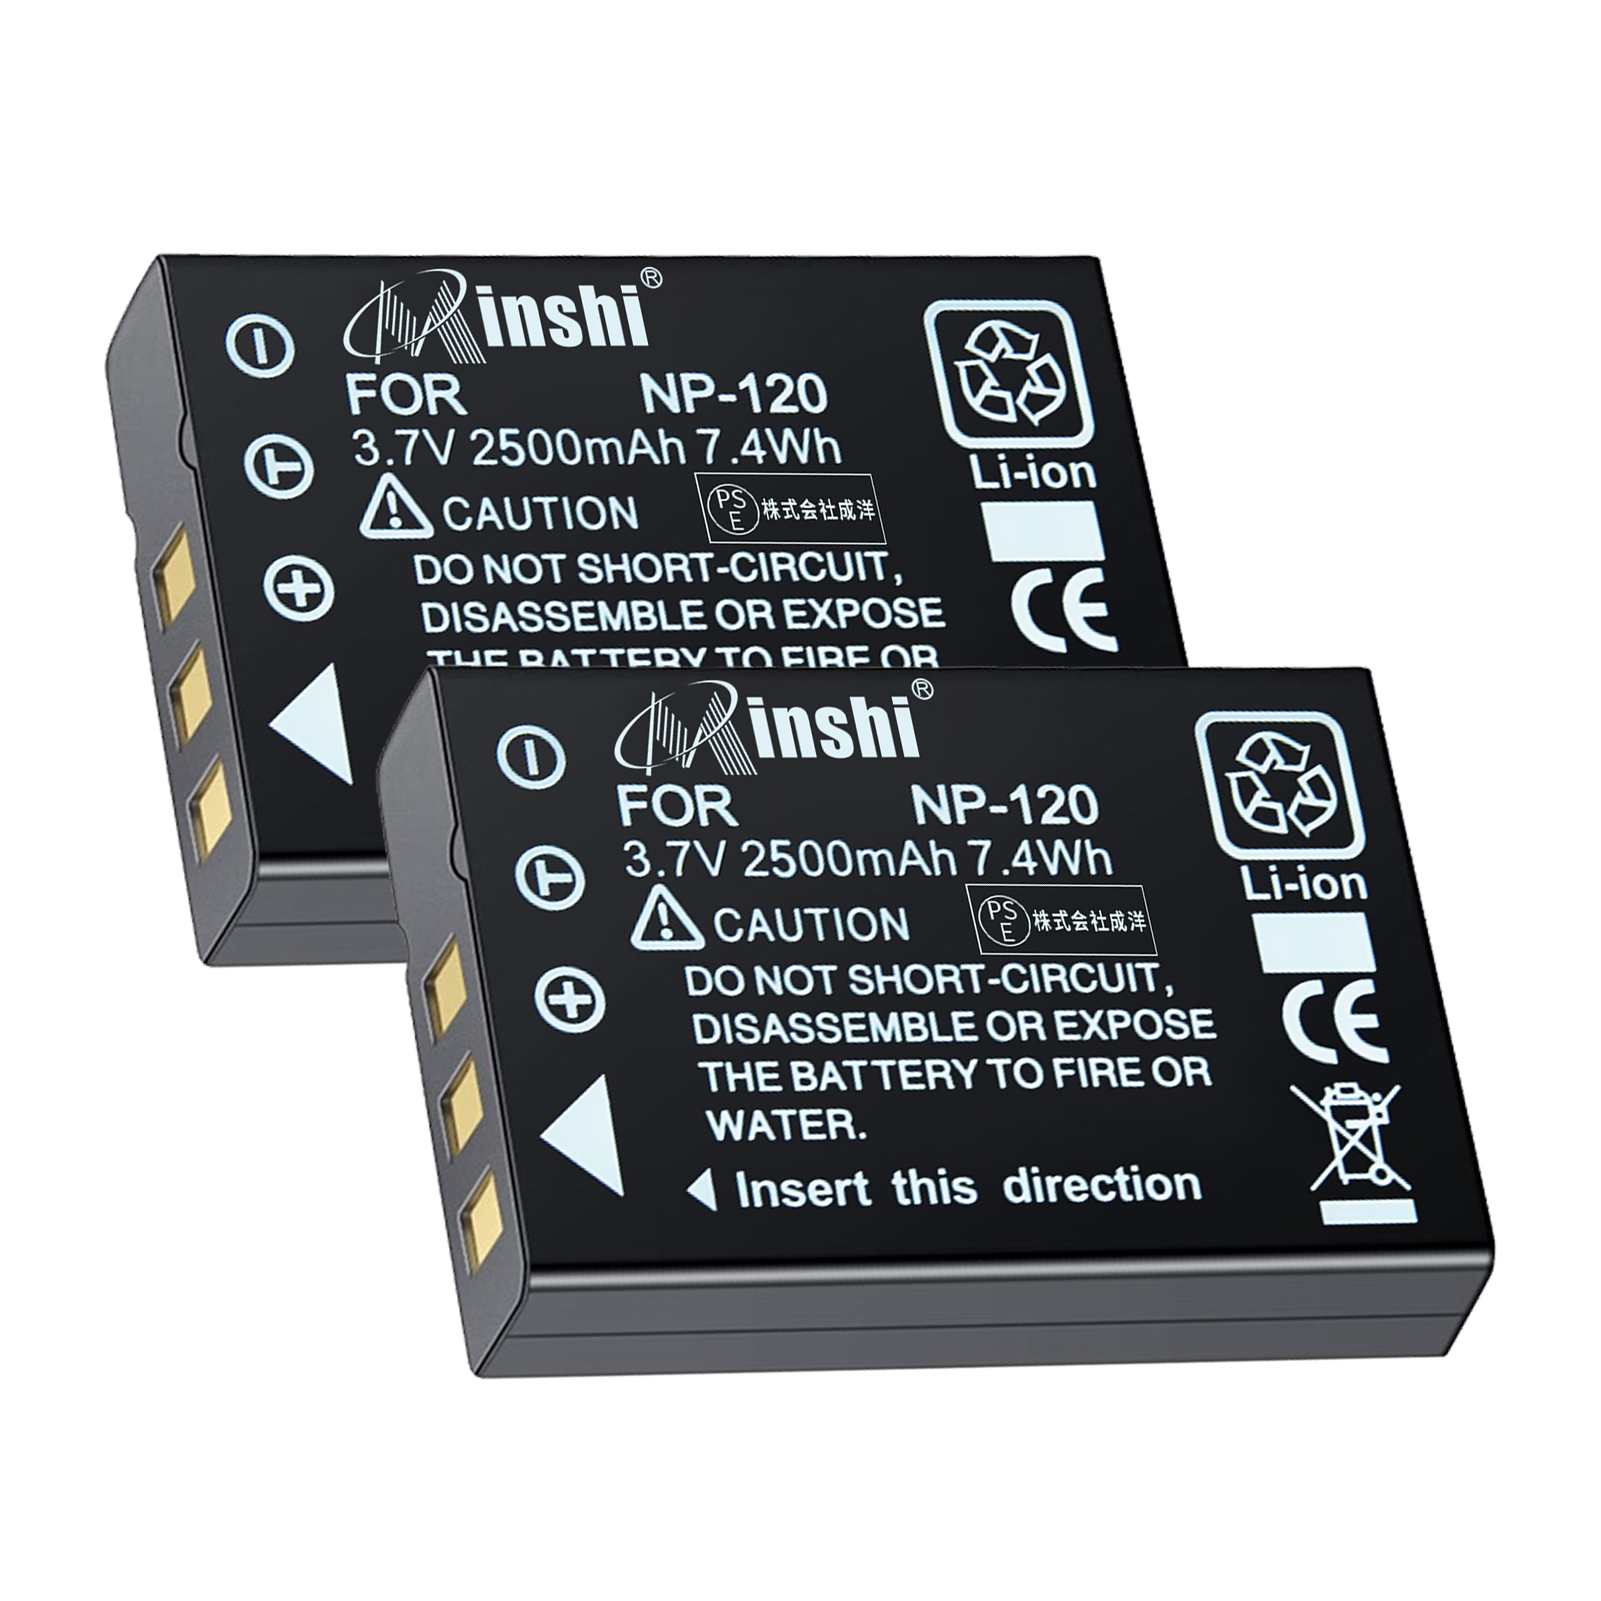 【２個セット】 minshi FUJIFILM D-17 Optio  NP-120 対応 互換バッテリー 2500mAh  高品質交換用バッテリー